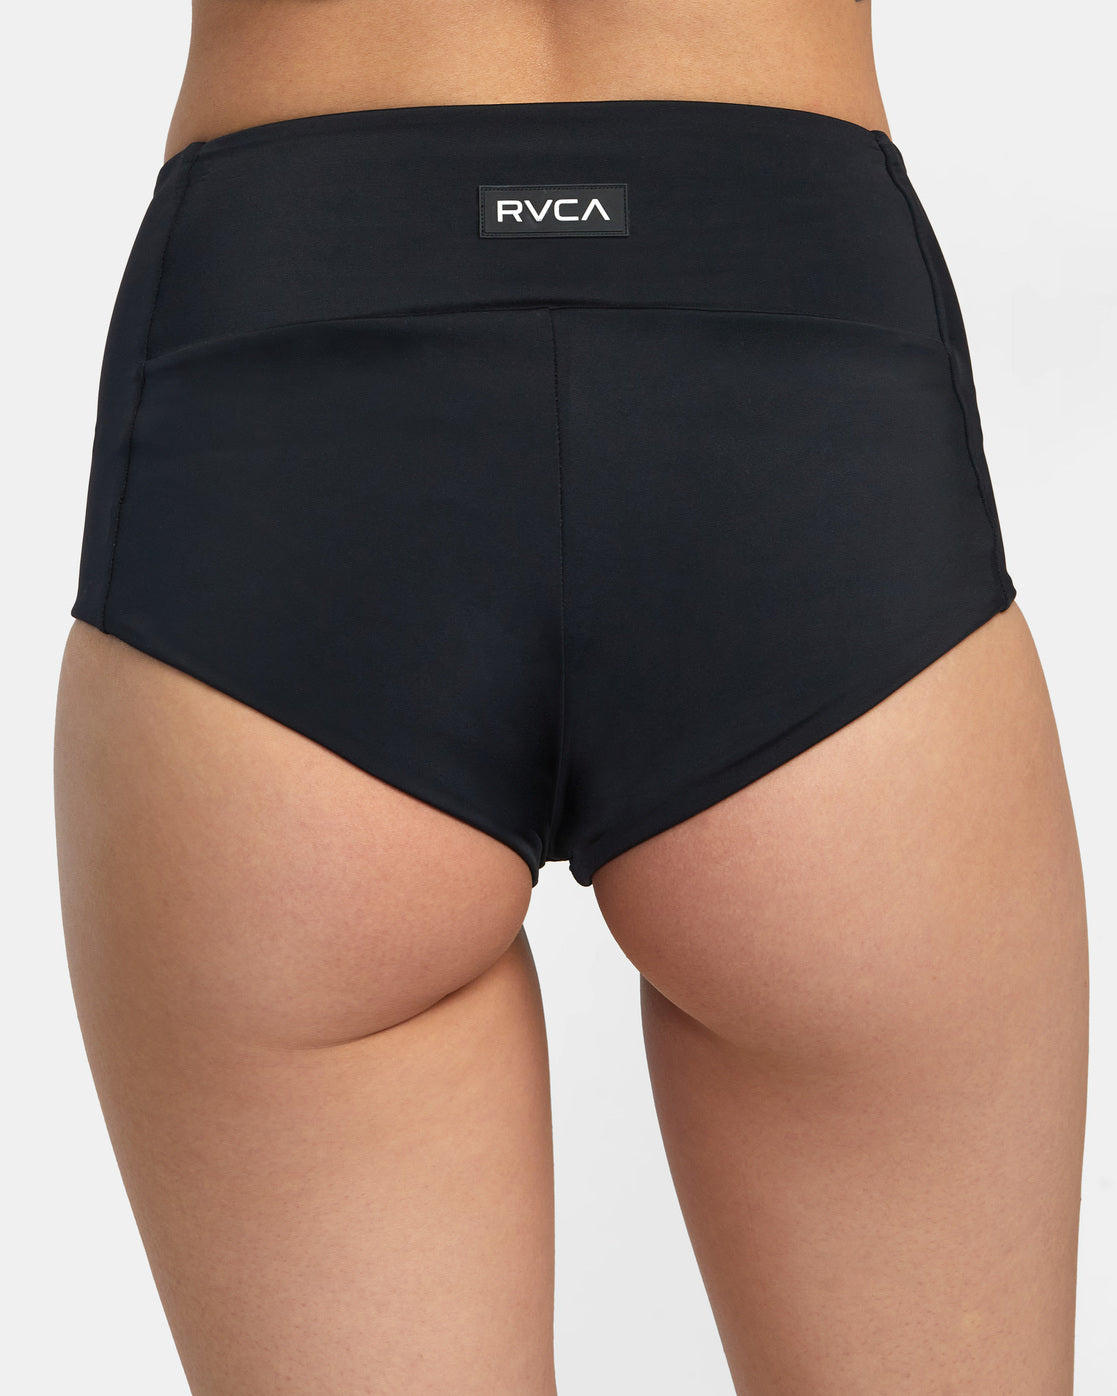 RVCA Nix Cheeky Bottom Black – SantoLoco Hawaii